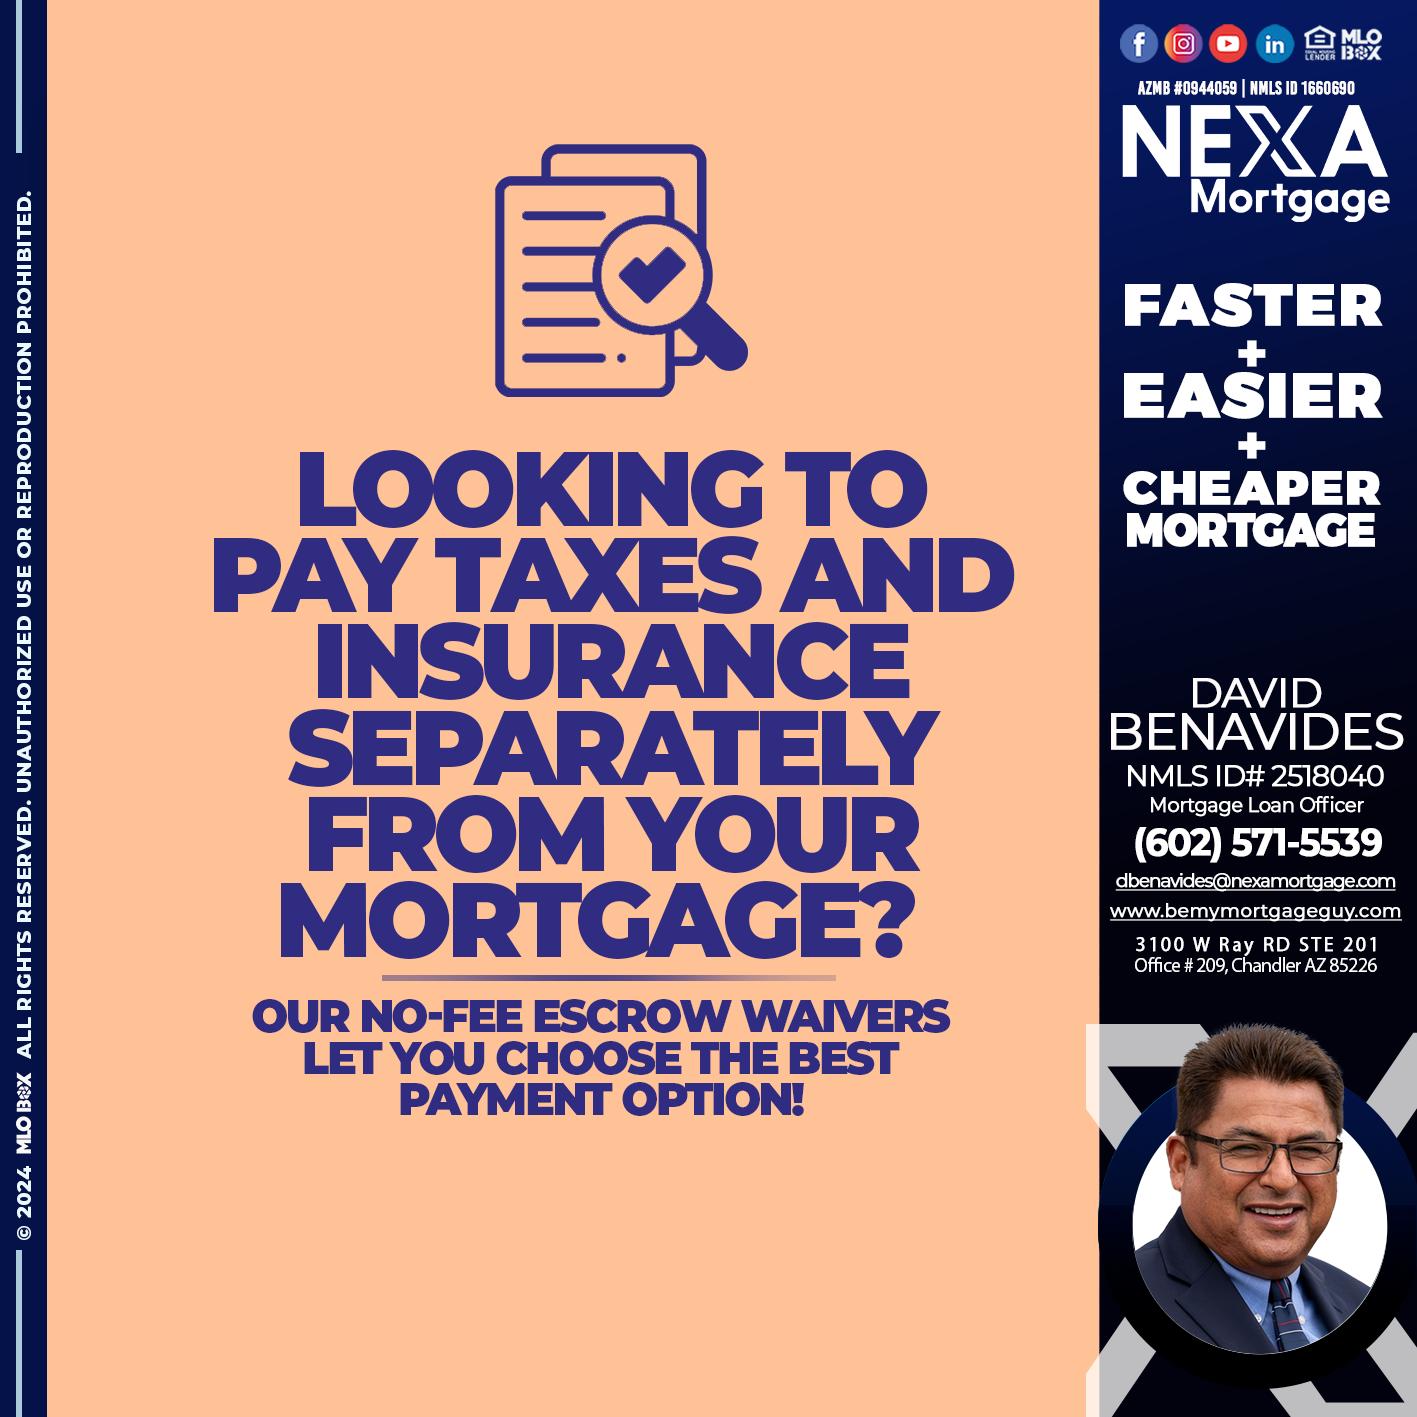 LOOKING PAY - David Benavides -Mortgage Loan Officer